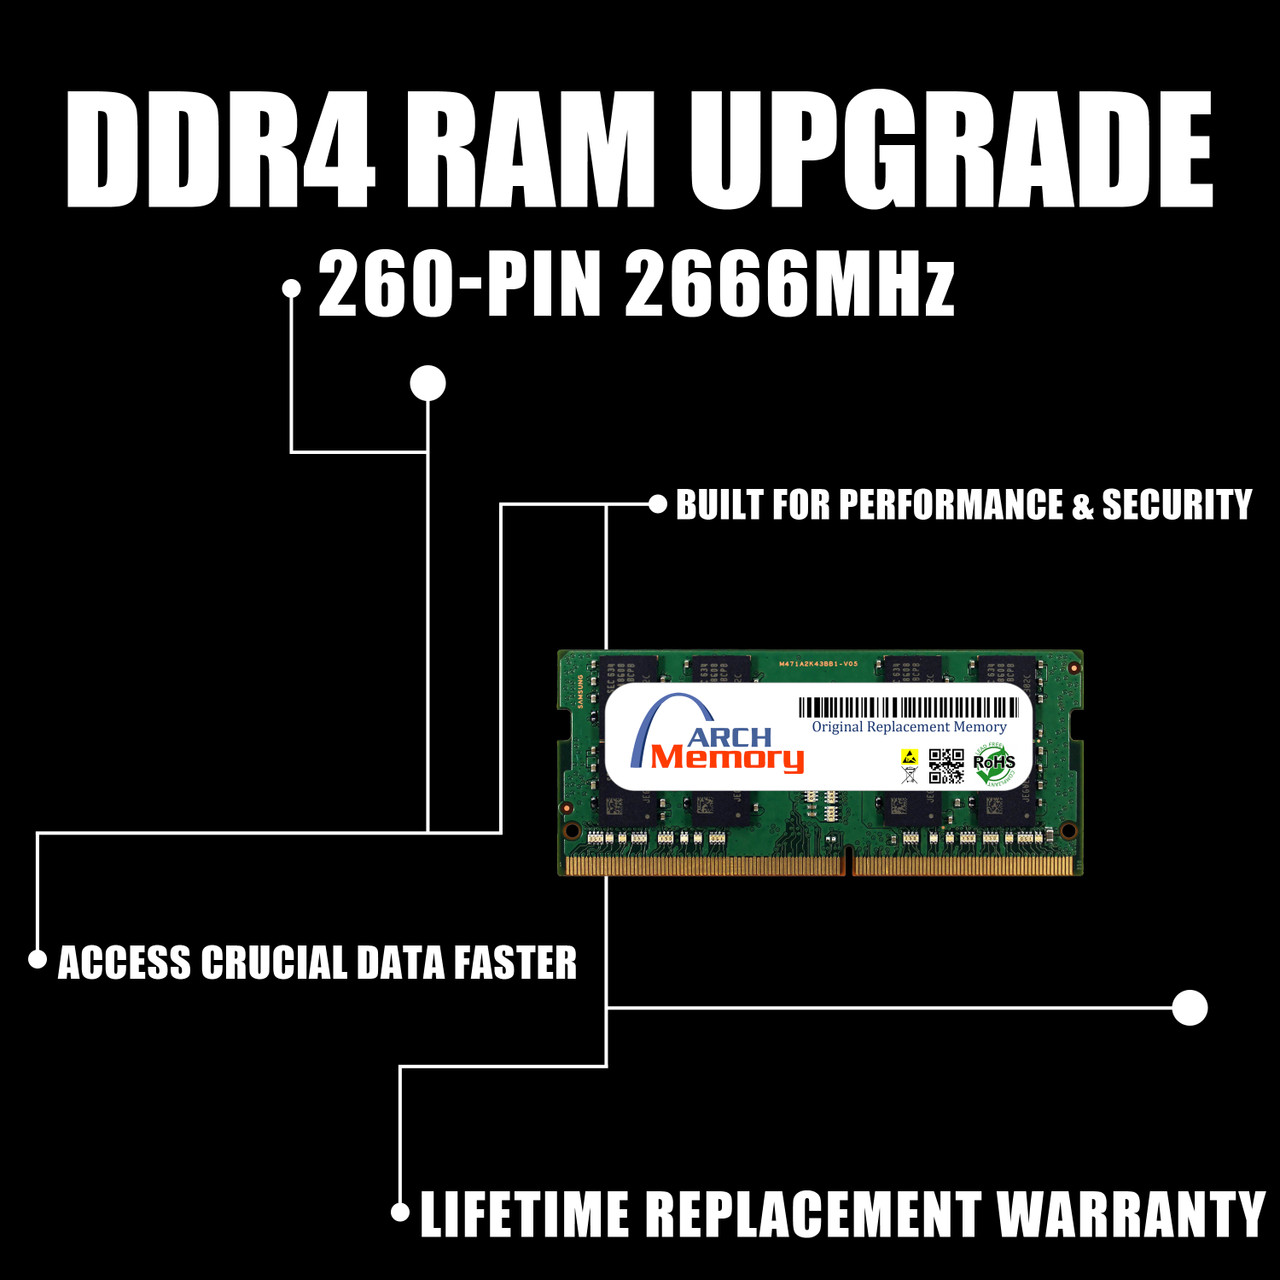 8GB 92M11-S8D40 AS-8GD4 DDR4-2666 260-Pin So-dimm RAM | Memory for Asustor